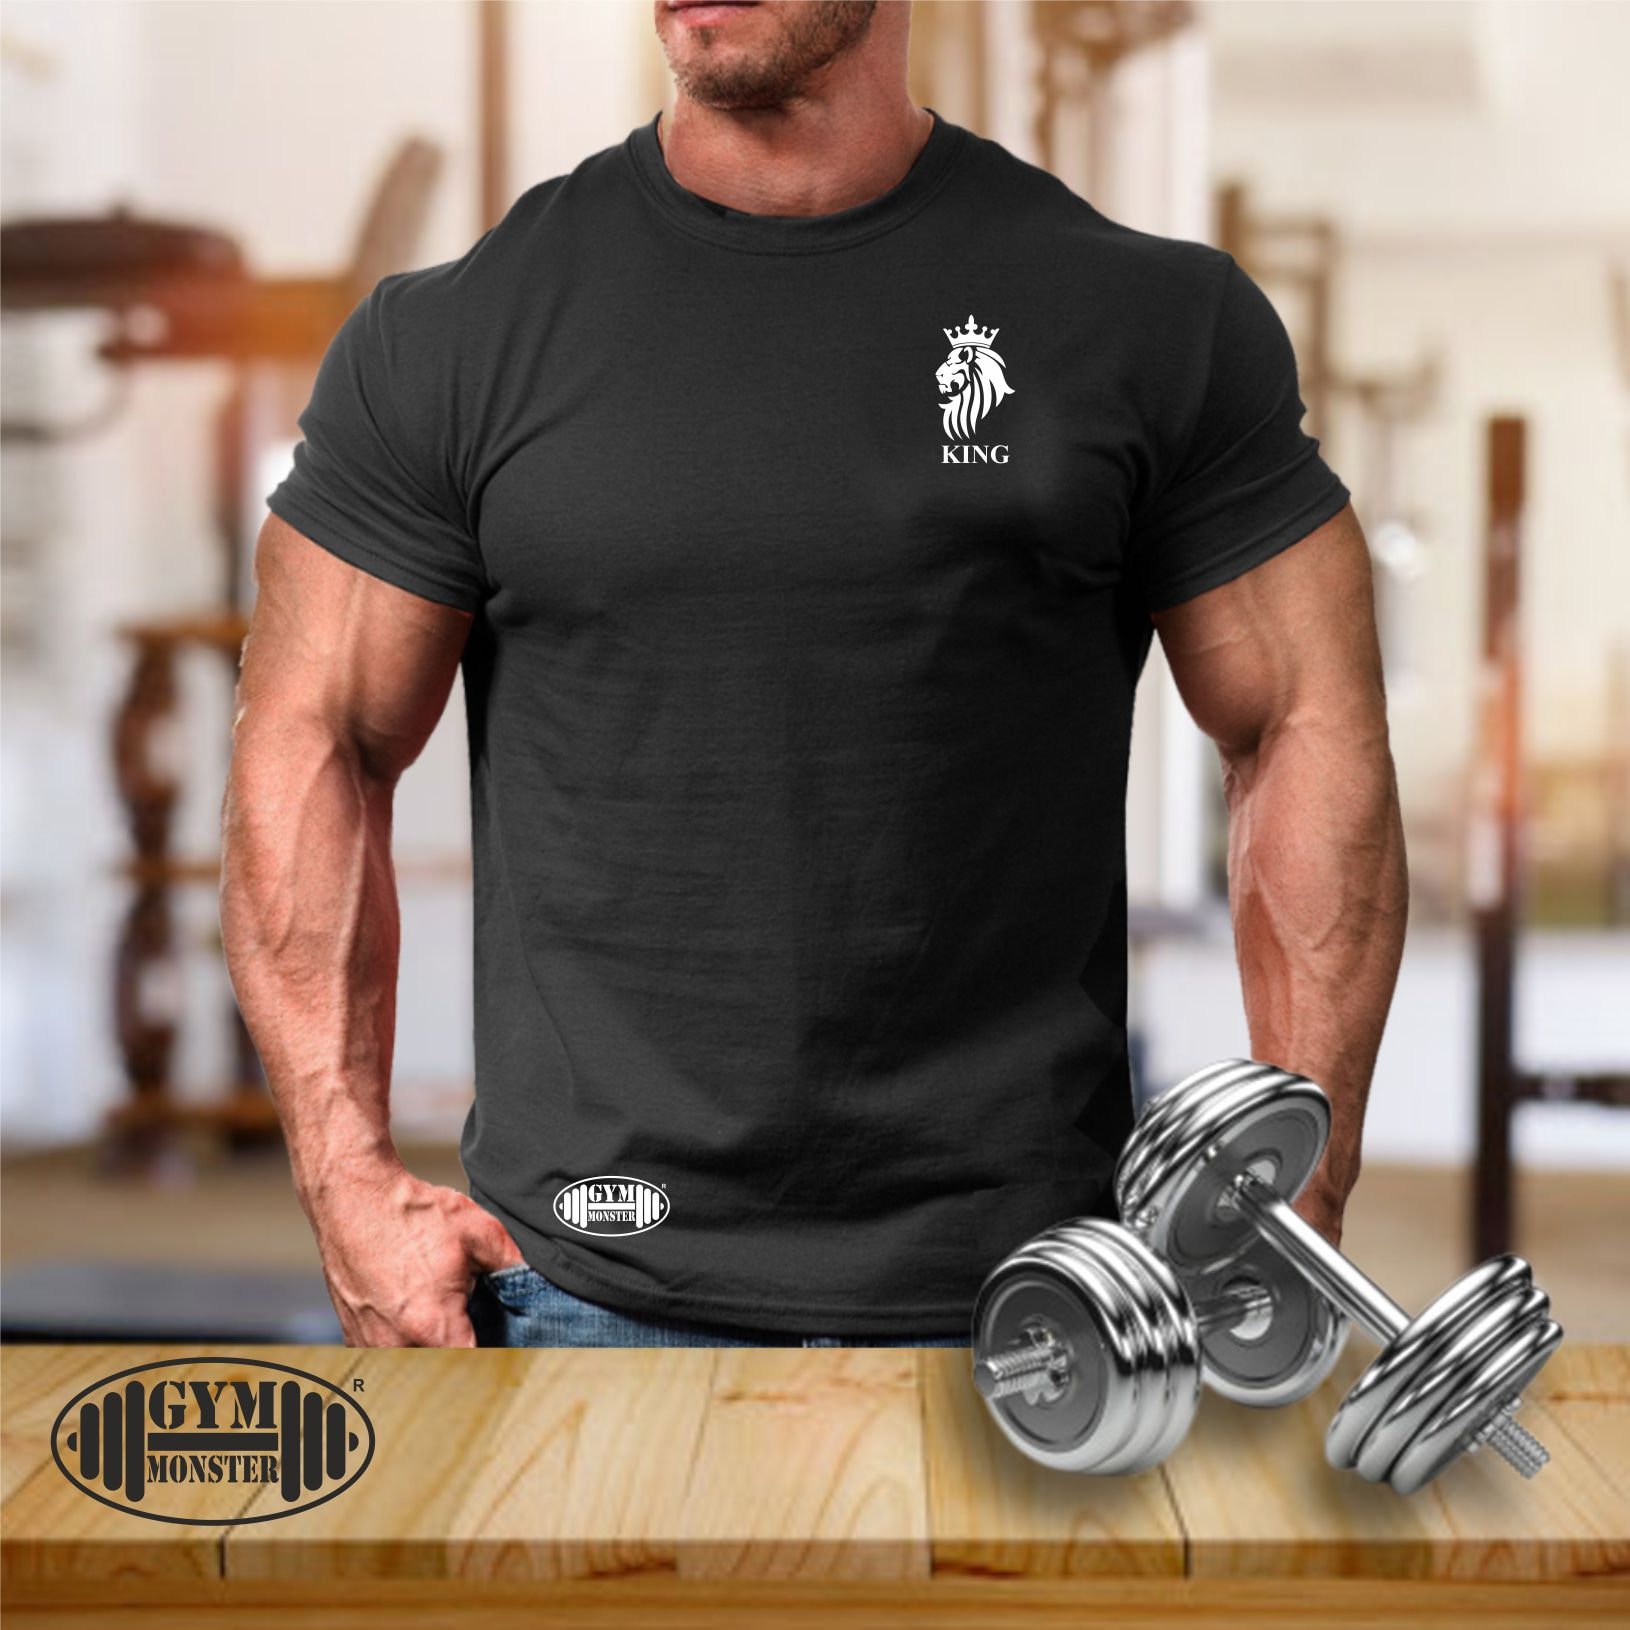 König Löwe T Shirt Pocket Gym Kleidung Bodybuilding Gewicht Training Übung Kick Boxen Mma Kampfsport Monster Herren T-Shirt von TheGymMonsterTGM